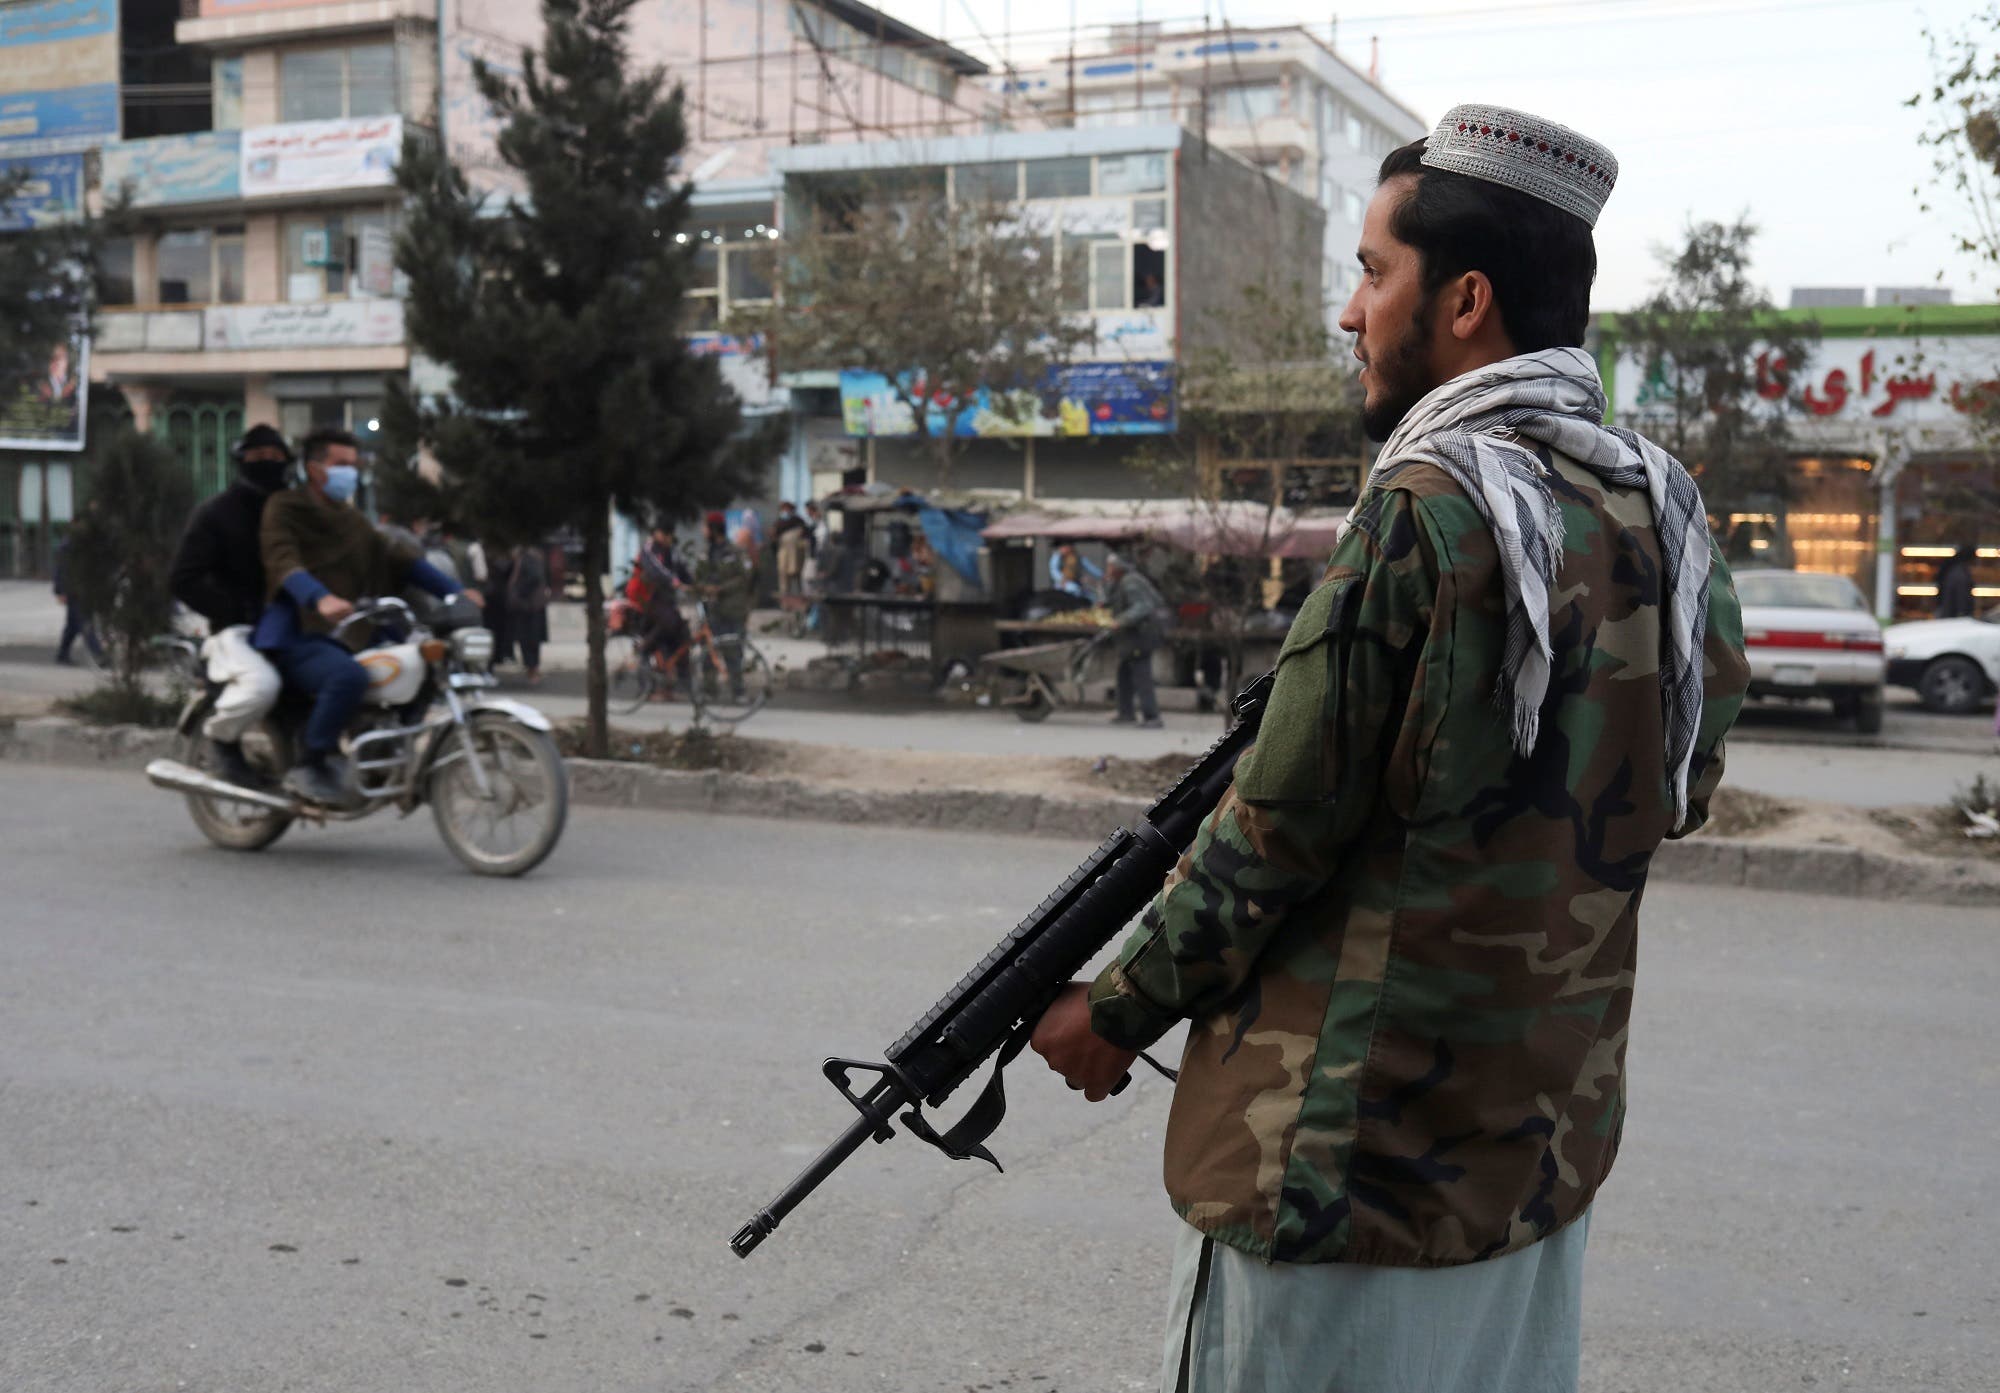 عنصر من طالبان في كابل (أرشيفية من رويترز)